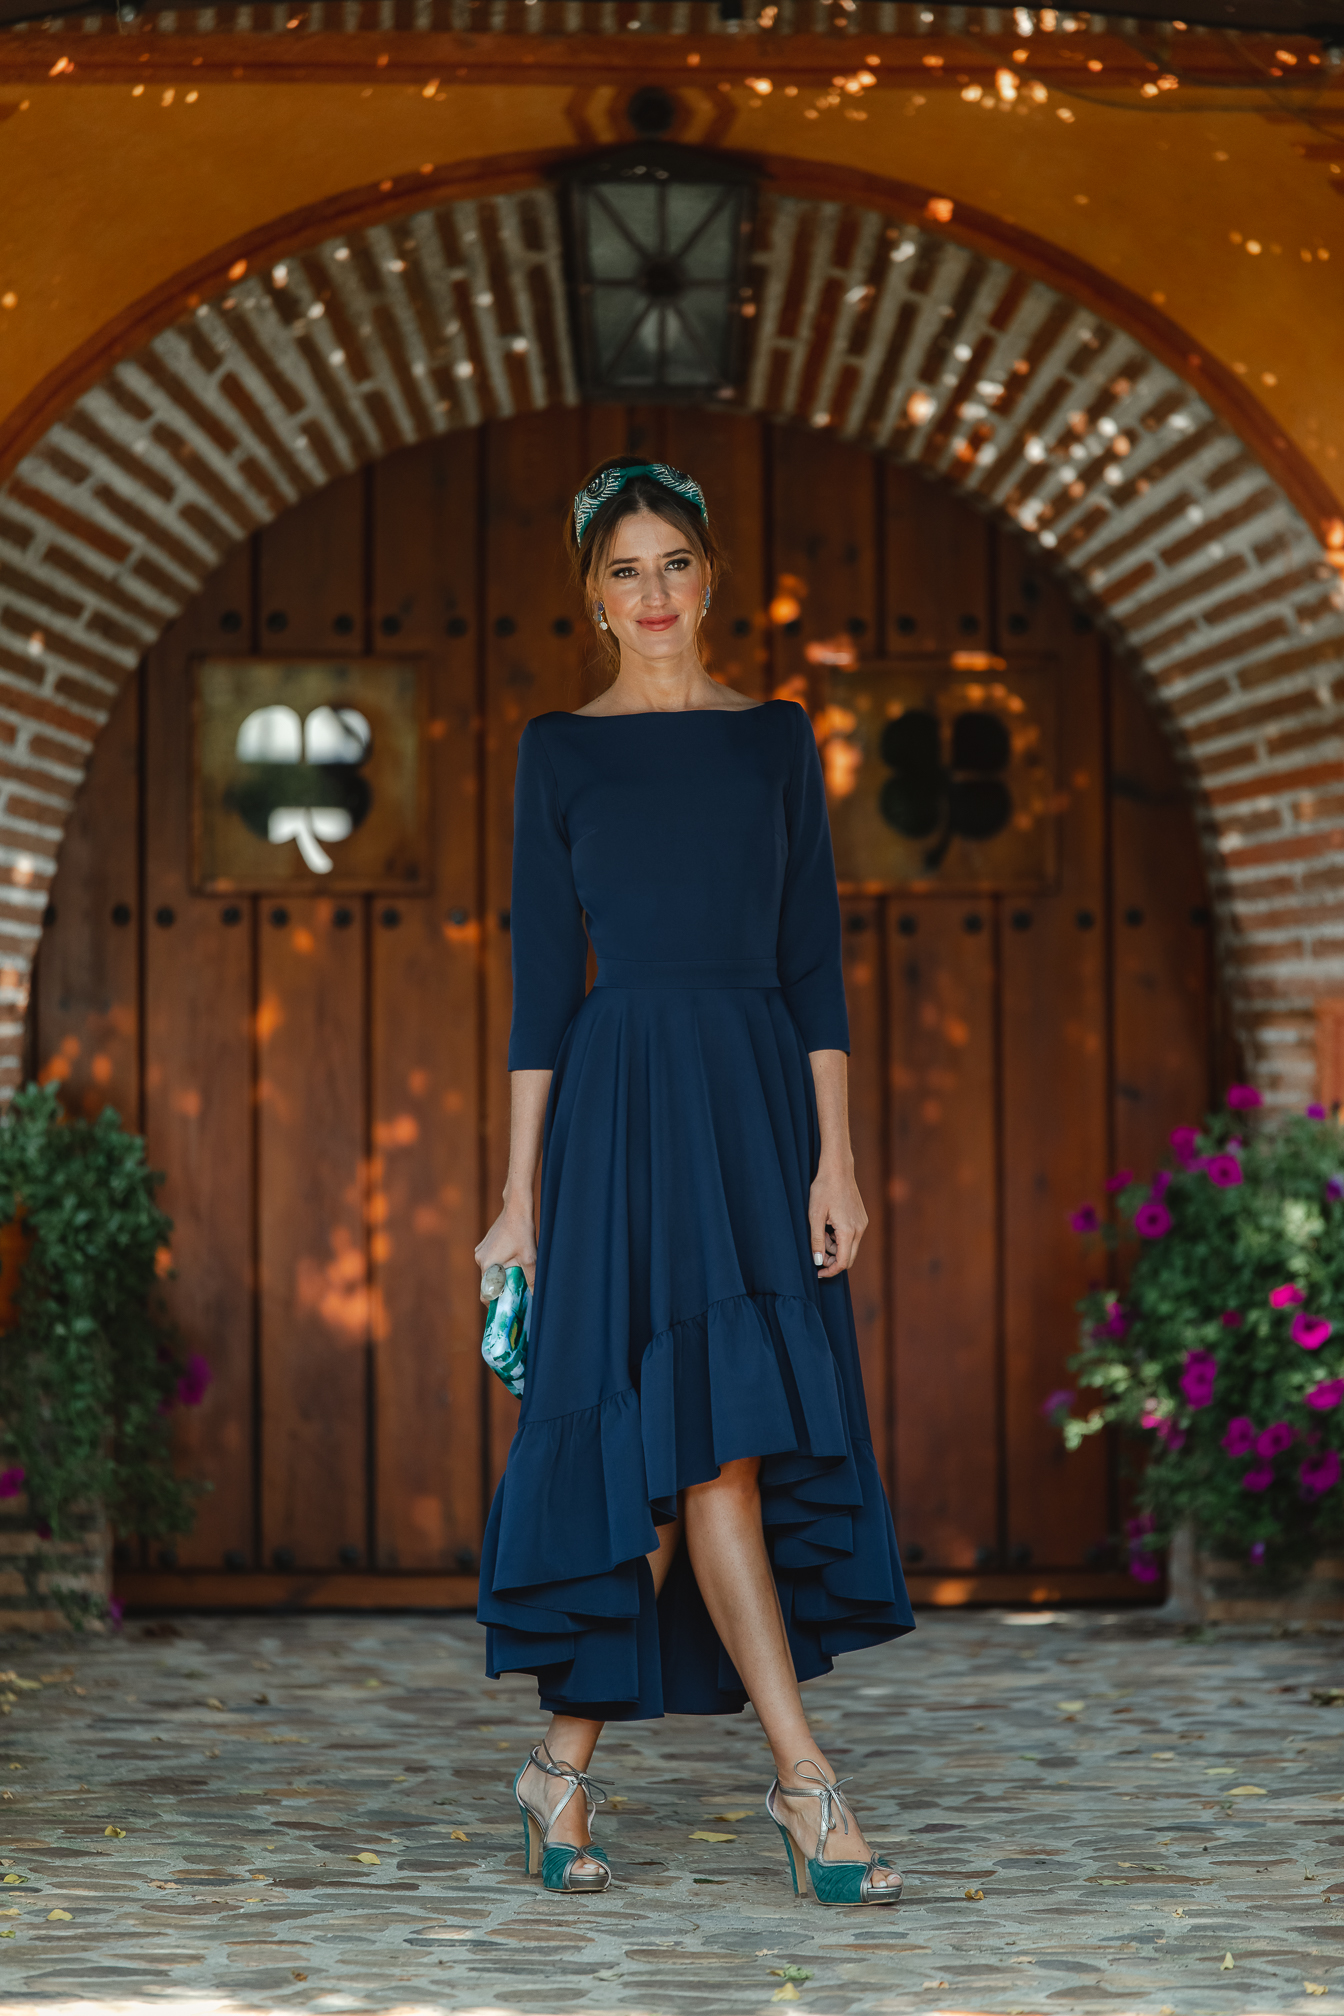 invitada boda otoño vestido azul